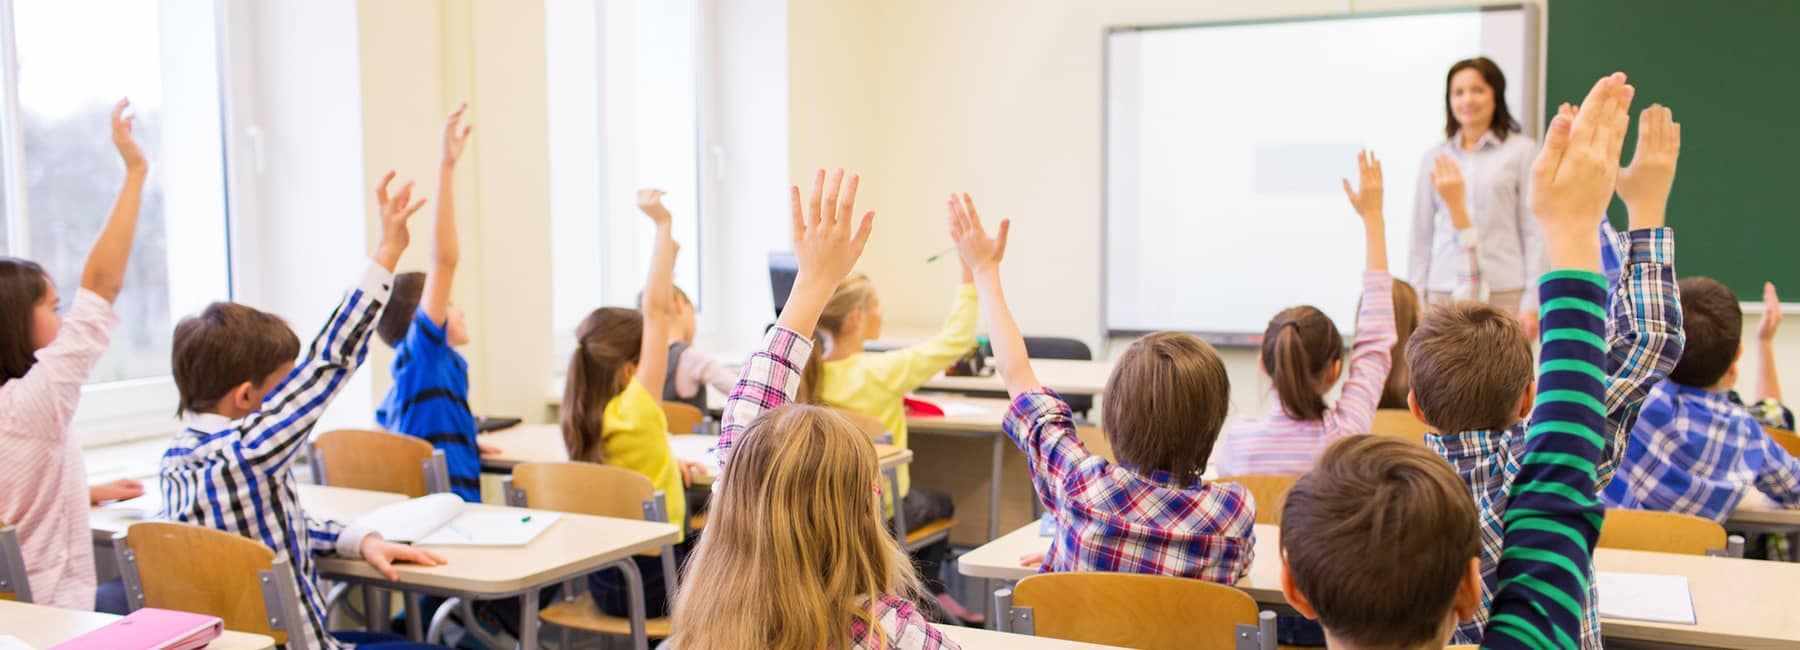 children raise hands classroom